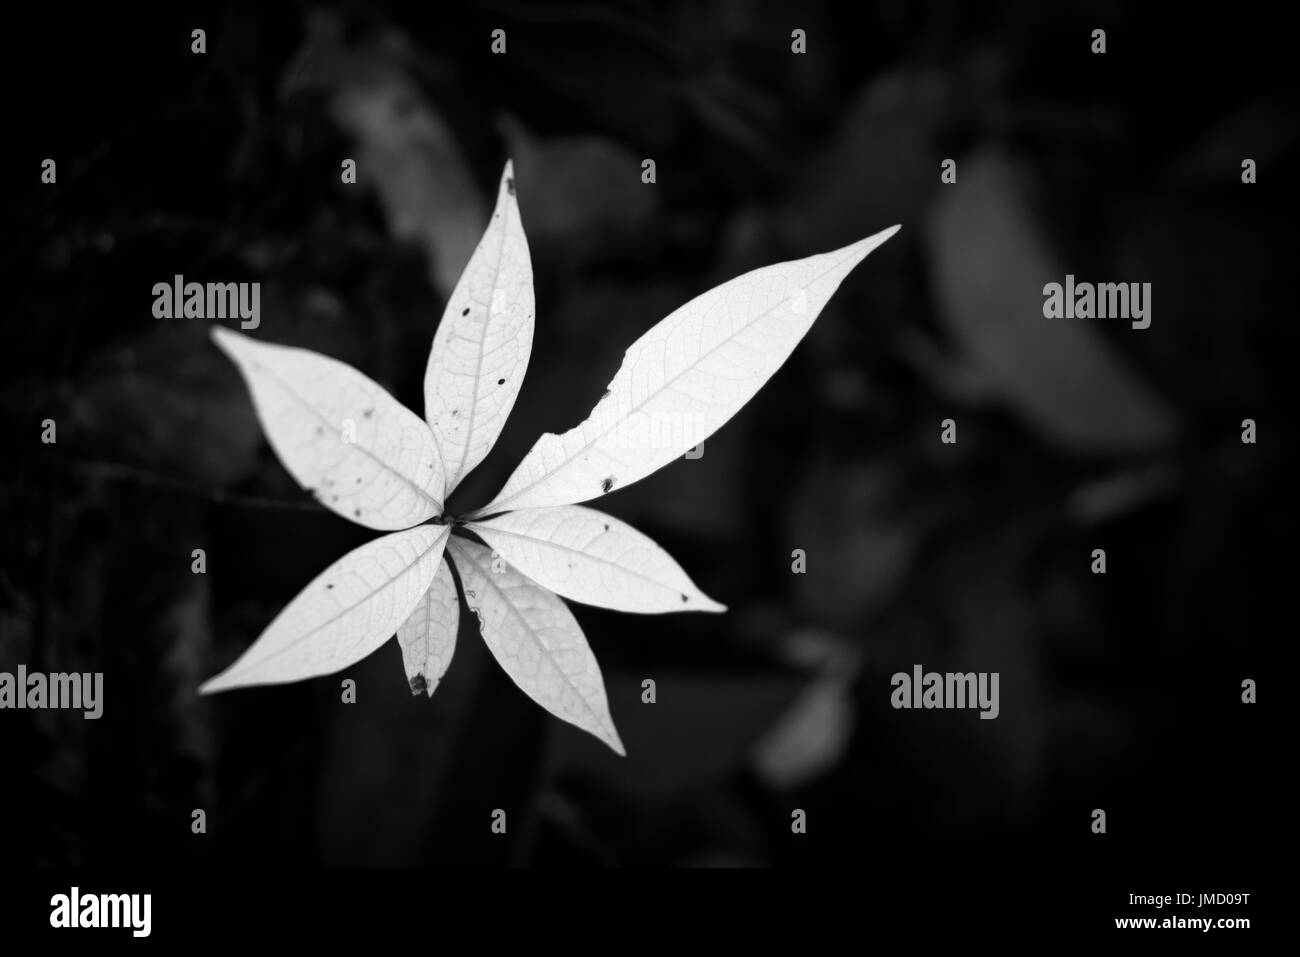 Makroaufnahme einer jungen Pflanze wächst aus dem Wald, Boden in schwarz / weiß Fotografie. Stockfoto